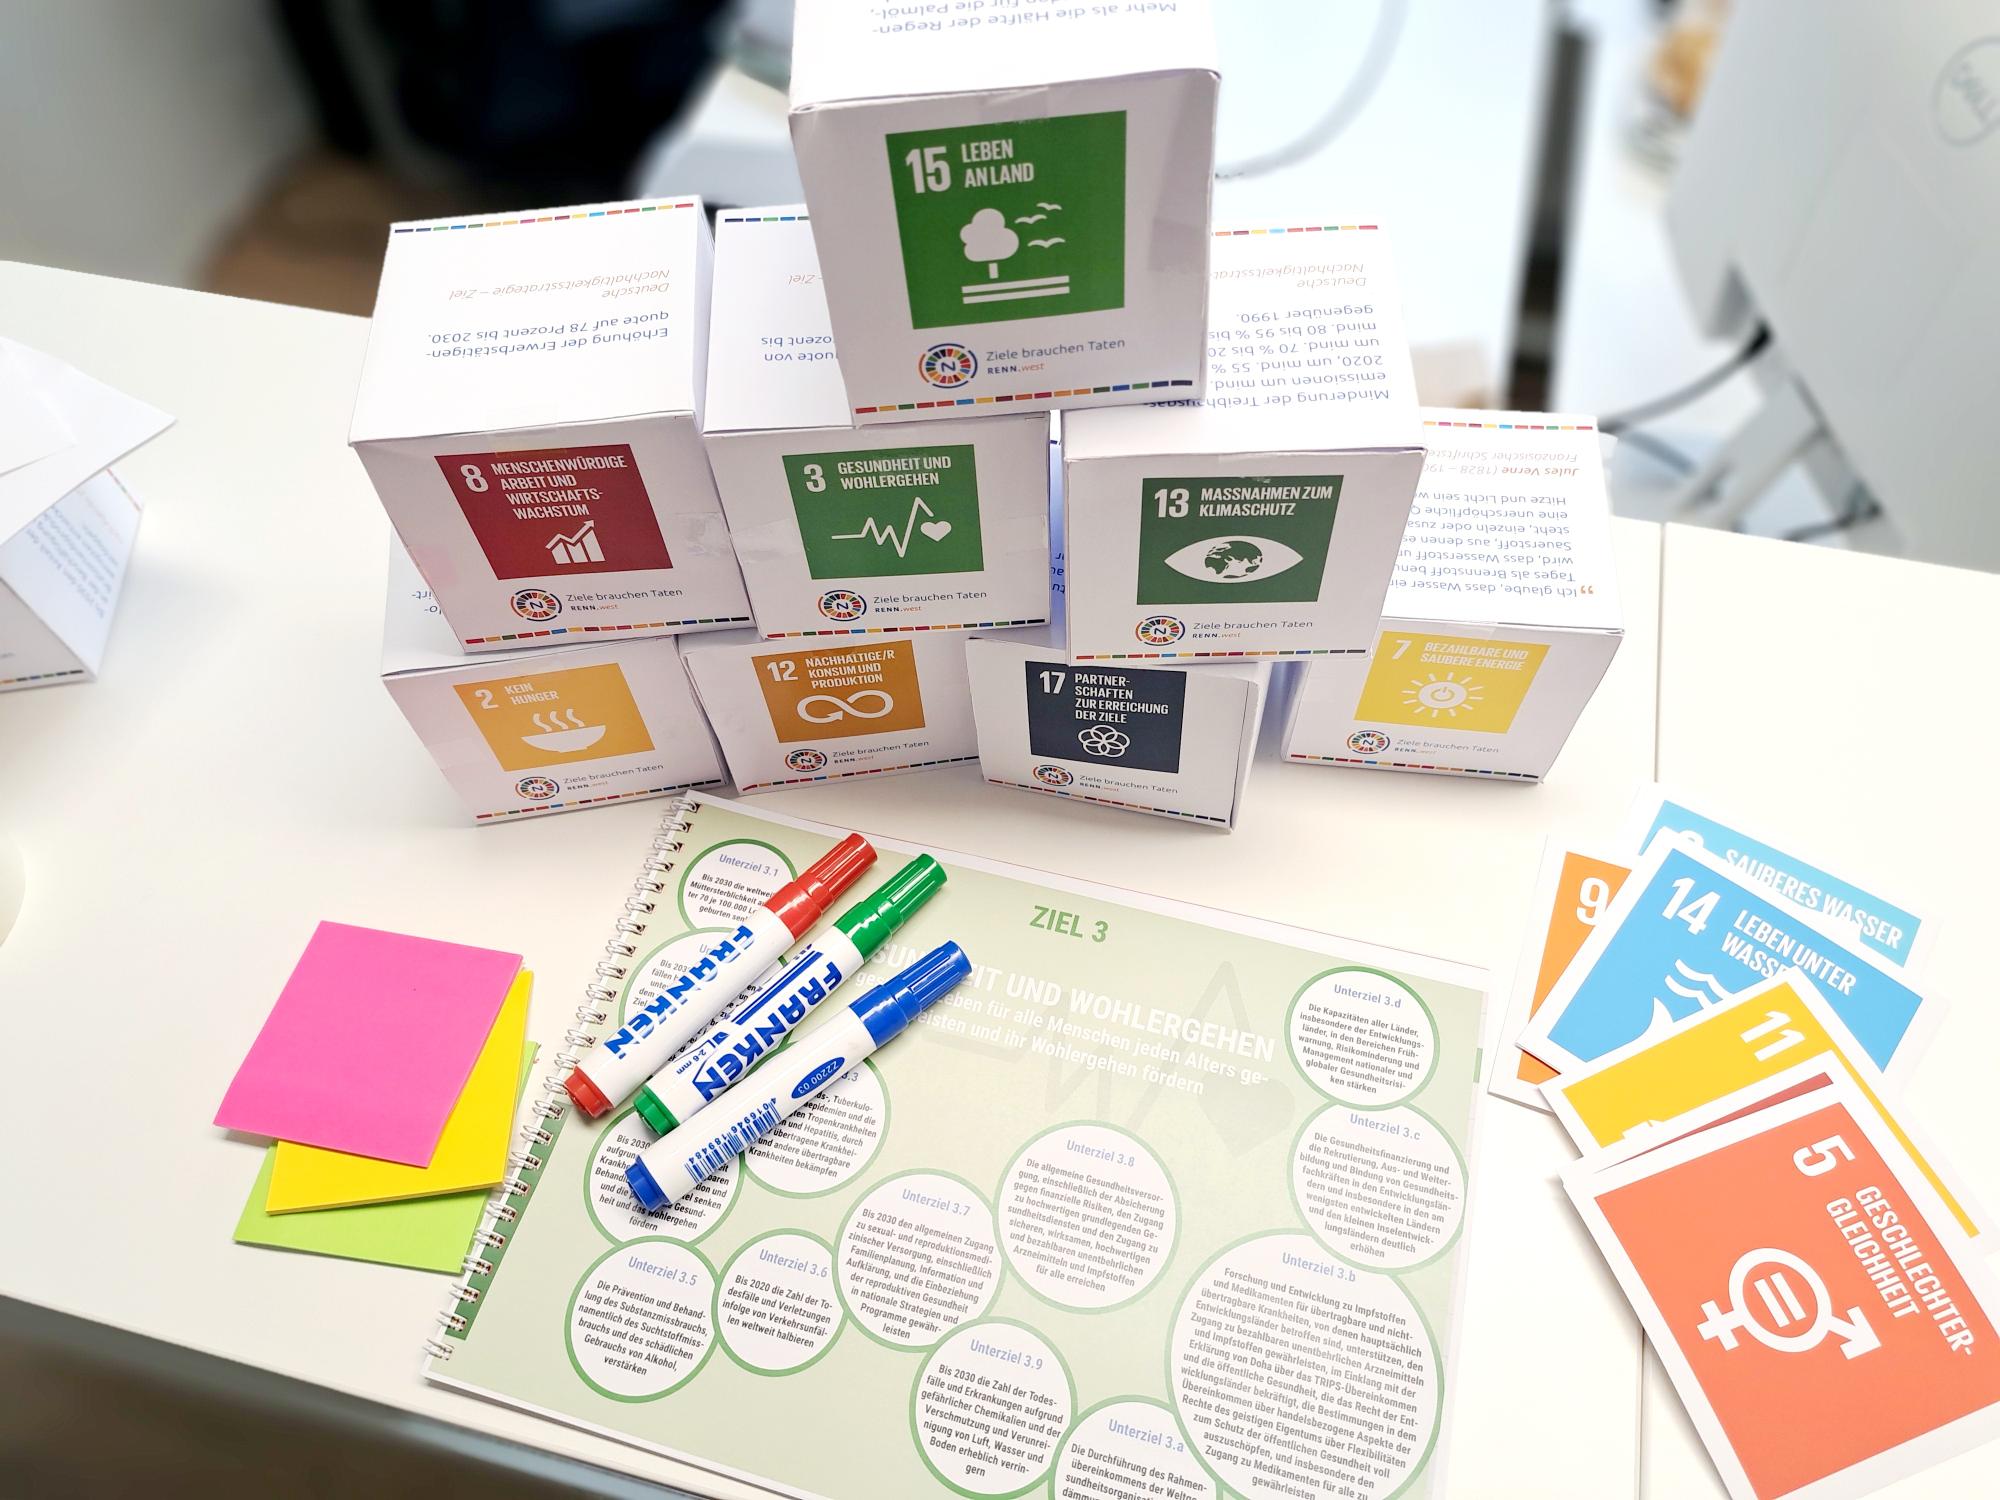 Bild Workshop zu 17 Zielen für nachhaltige Entwicklung Abkürzung SDG - Sustainable Development Goals bei der Bio-Mühle Eiling